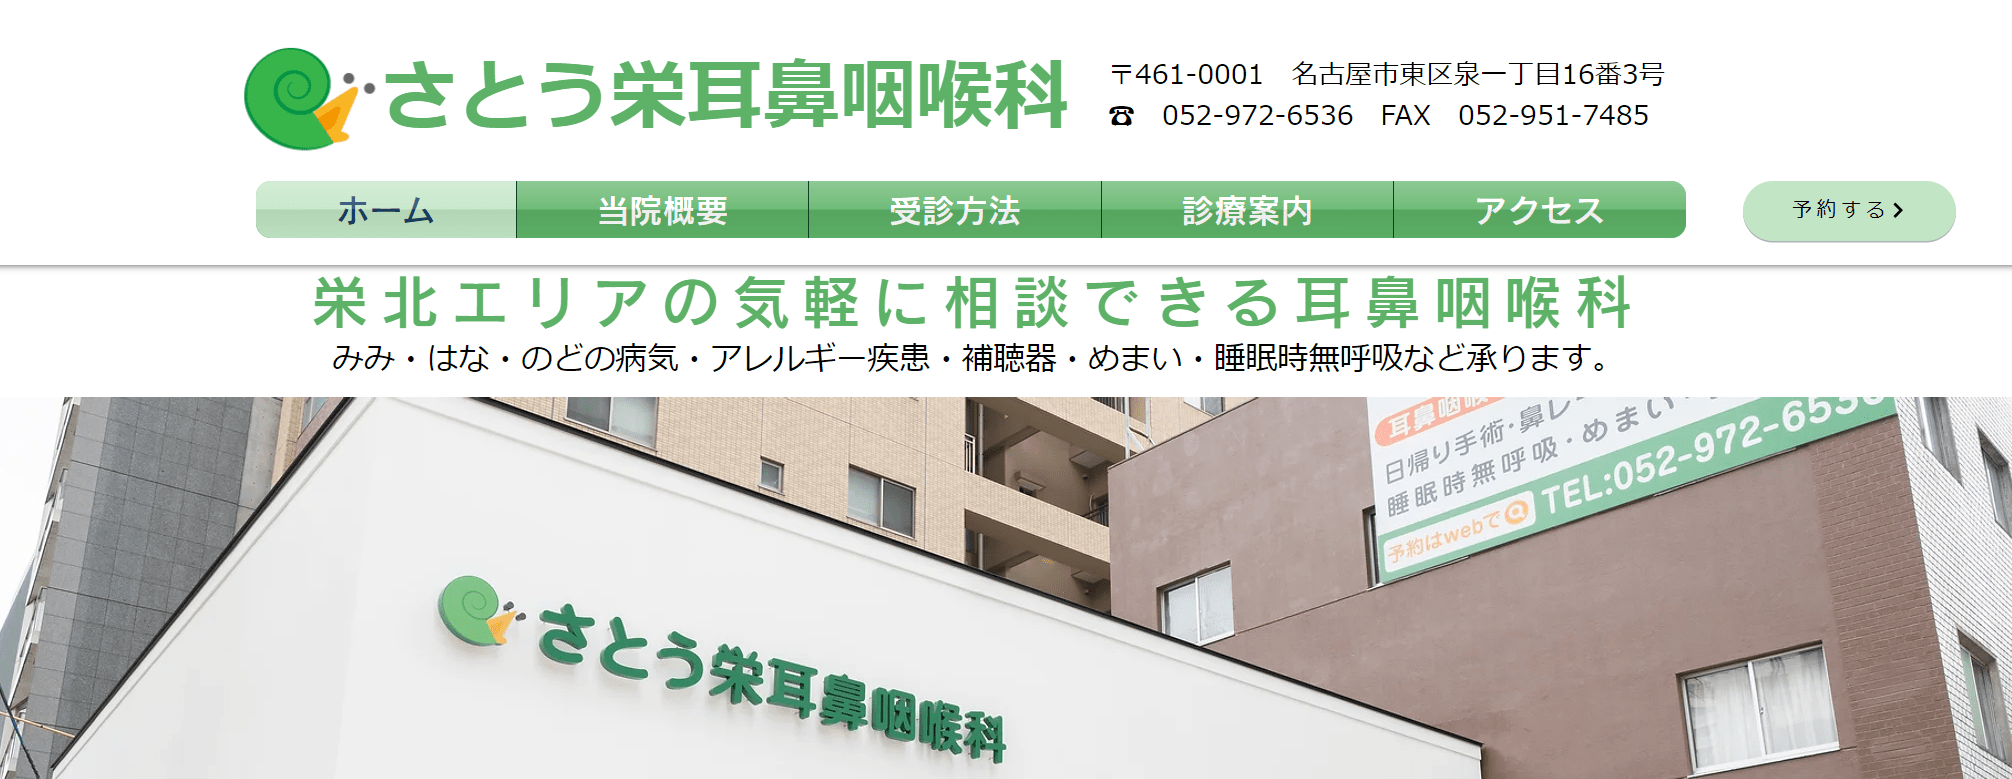 名古屋市で評判の耳鼻咽喉科クリニックおすすめ10選 さとう栄耳鼻咽喉科